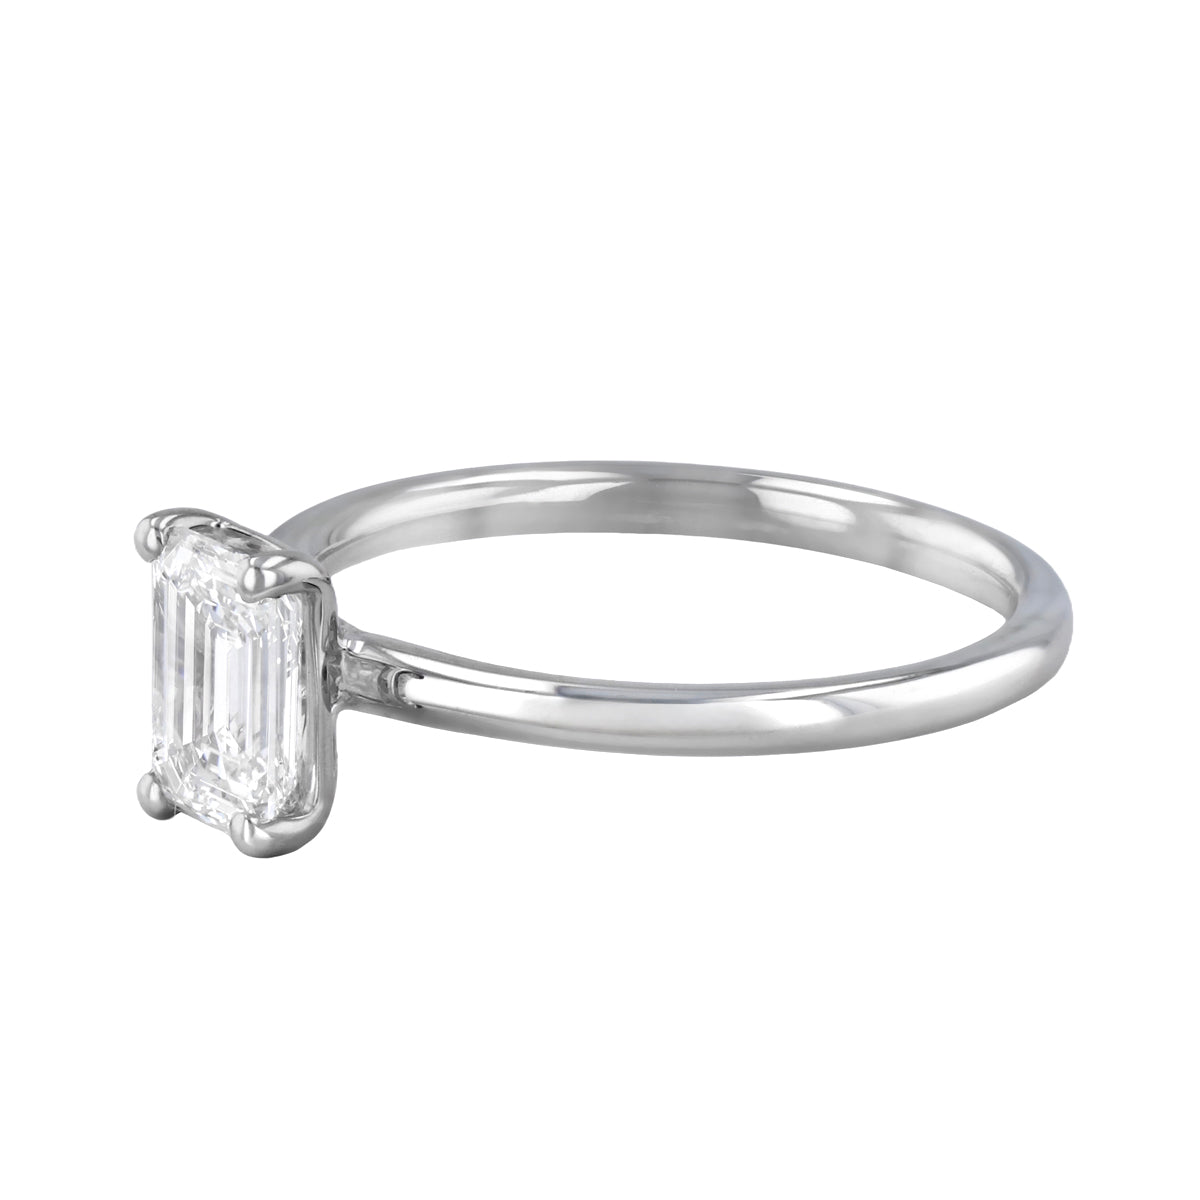 1-20ct-sofia-emerald-cut-solitaire-diamond-engagement-ring-platinum